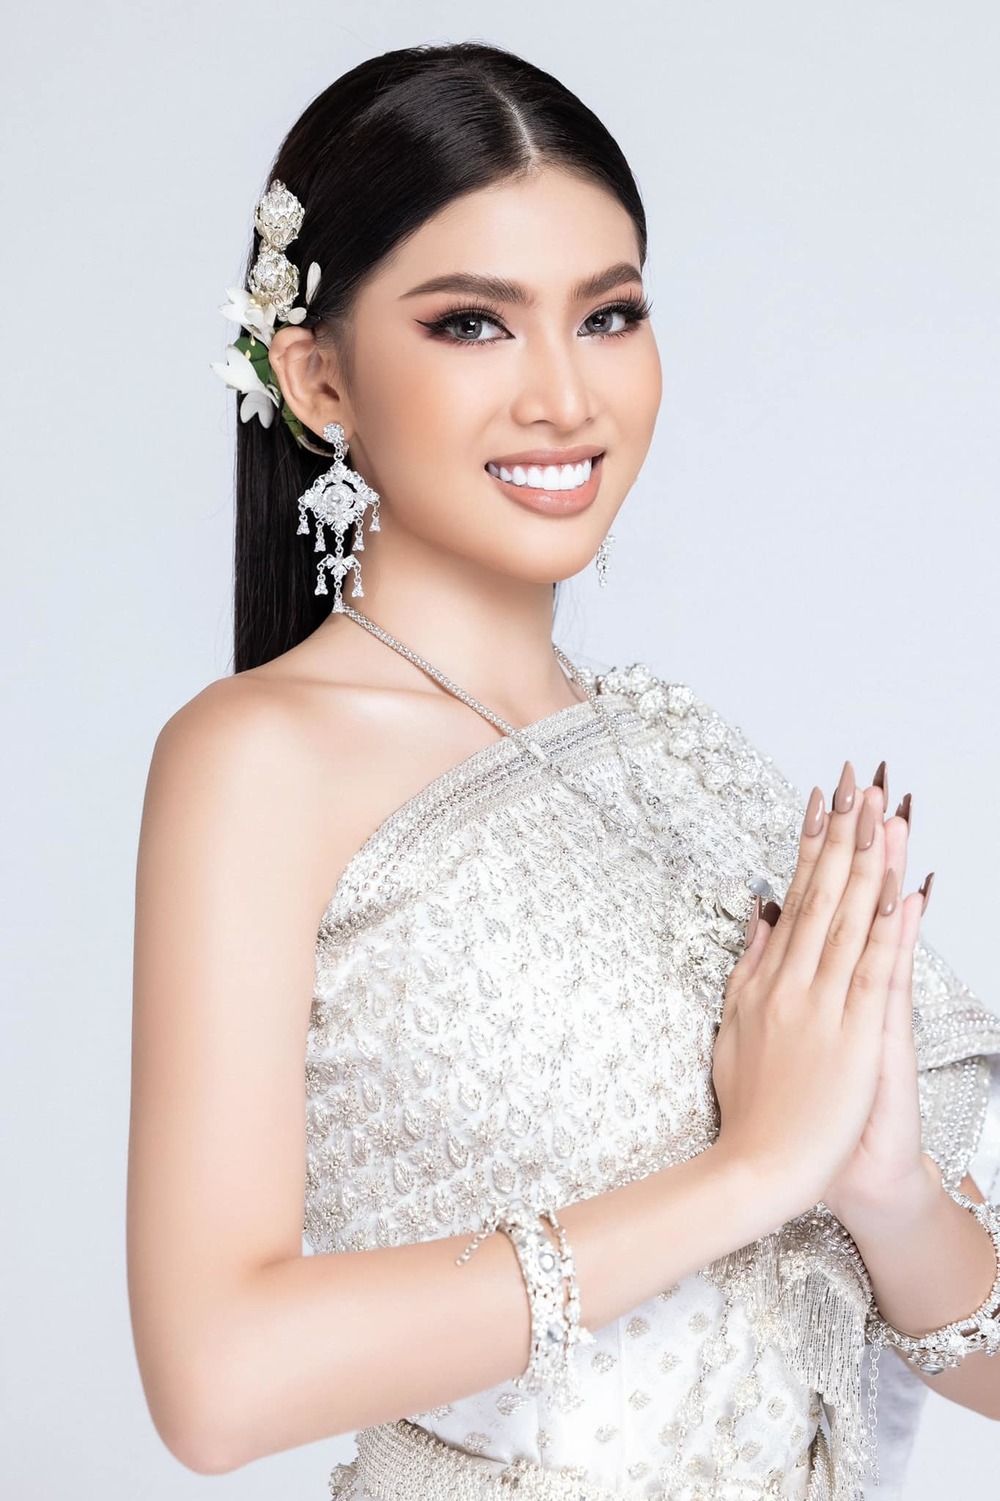 Á hậu cũng được fan quốc tế nhận xét là có vẻ đẹp được lòng người dân Thái. (Ảnh: FB Nguyễn Lê Ngọc Thảo)